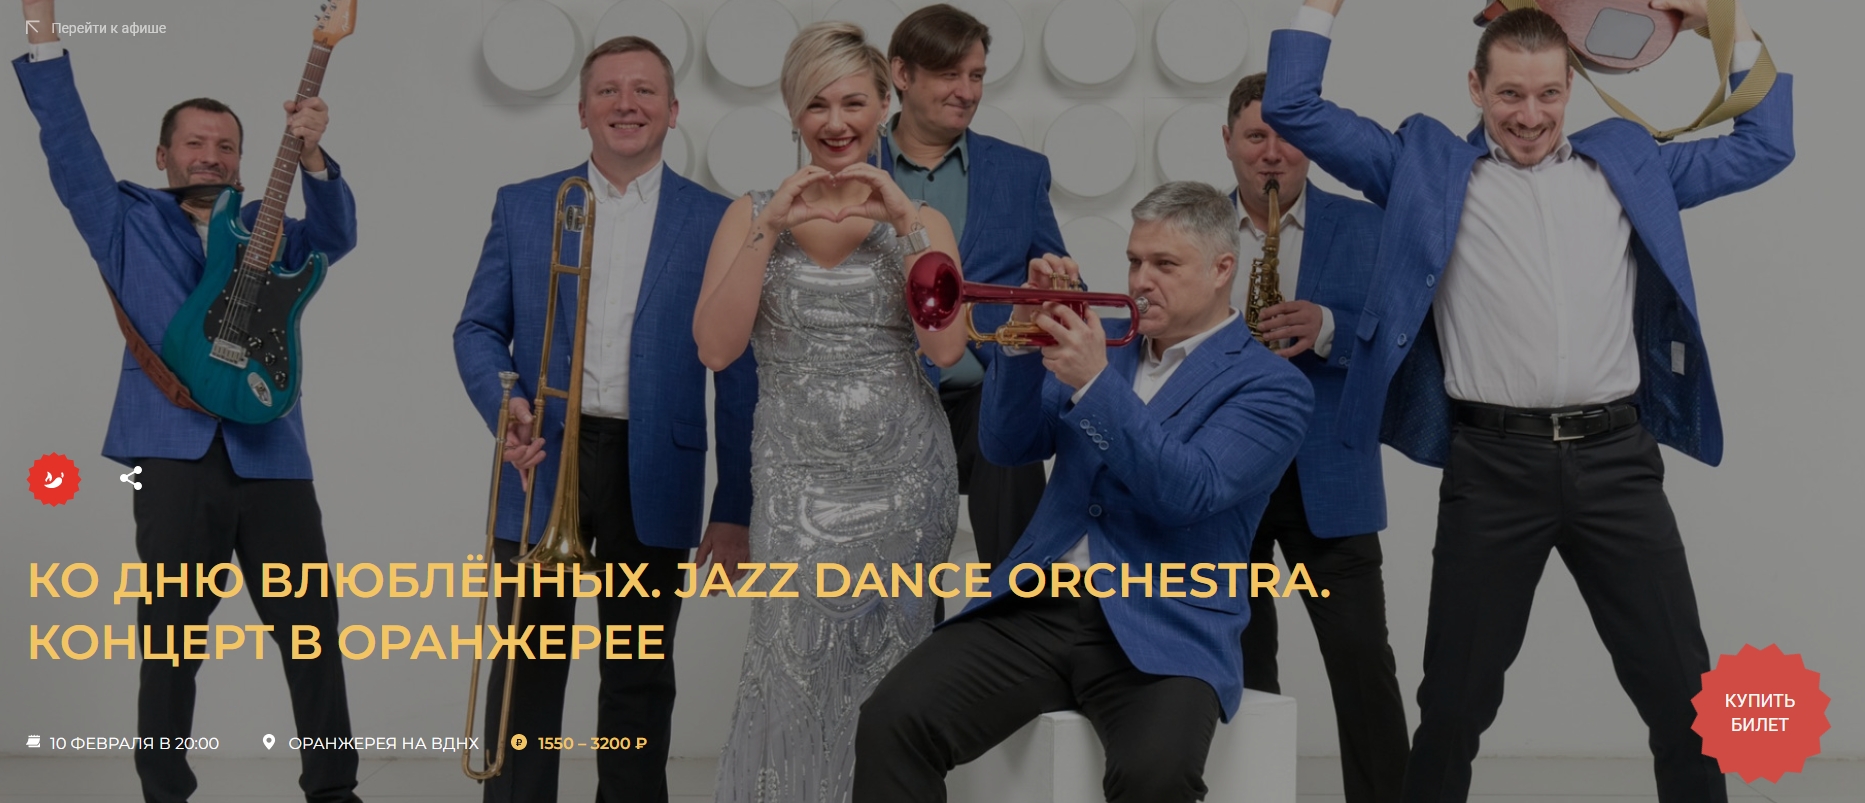 Kонцерт ко дню влюблённых  Jazz Dance Orchestra - концерт в оранжерее 10 февраля